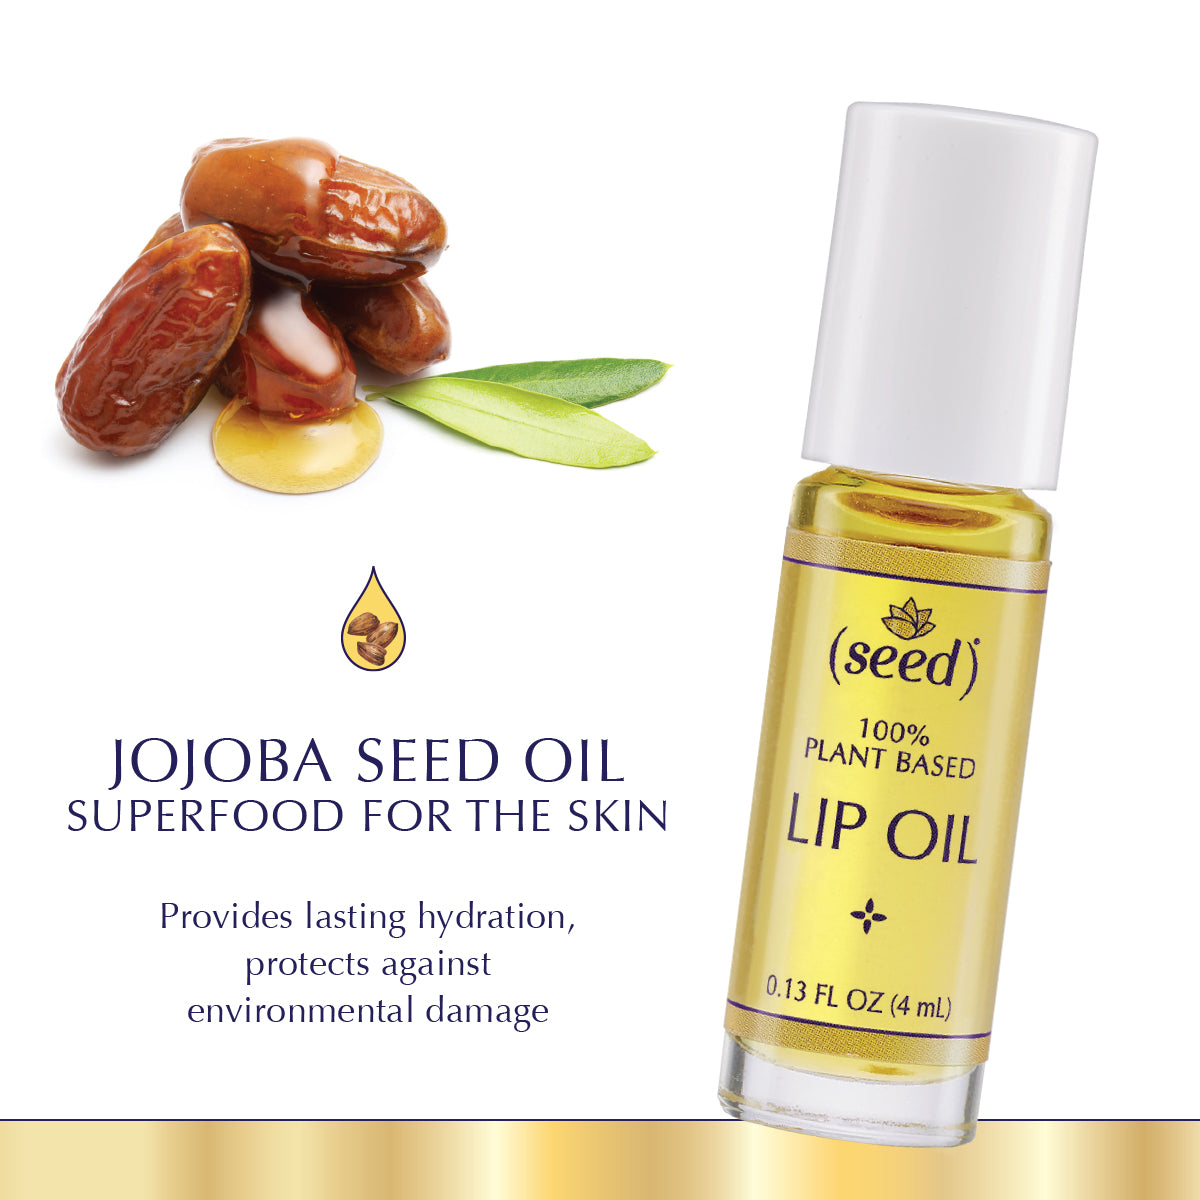 Seed Lip Oil features skin superfood Jojoba Seed Oil